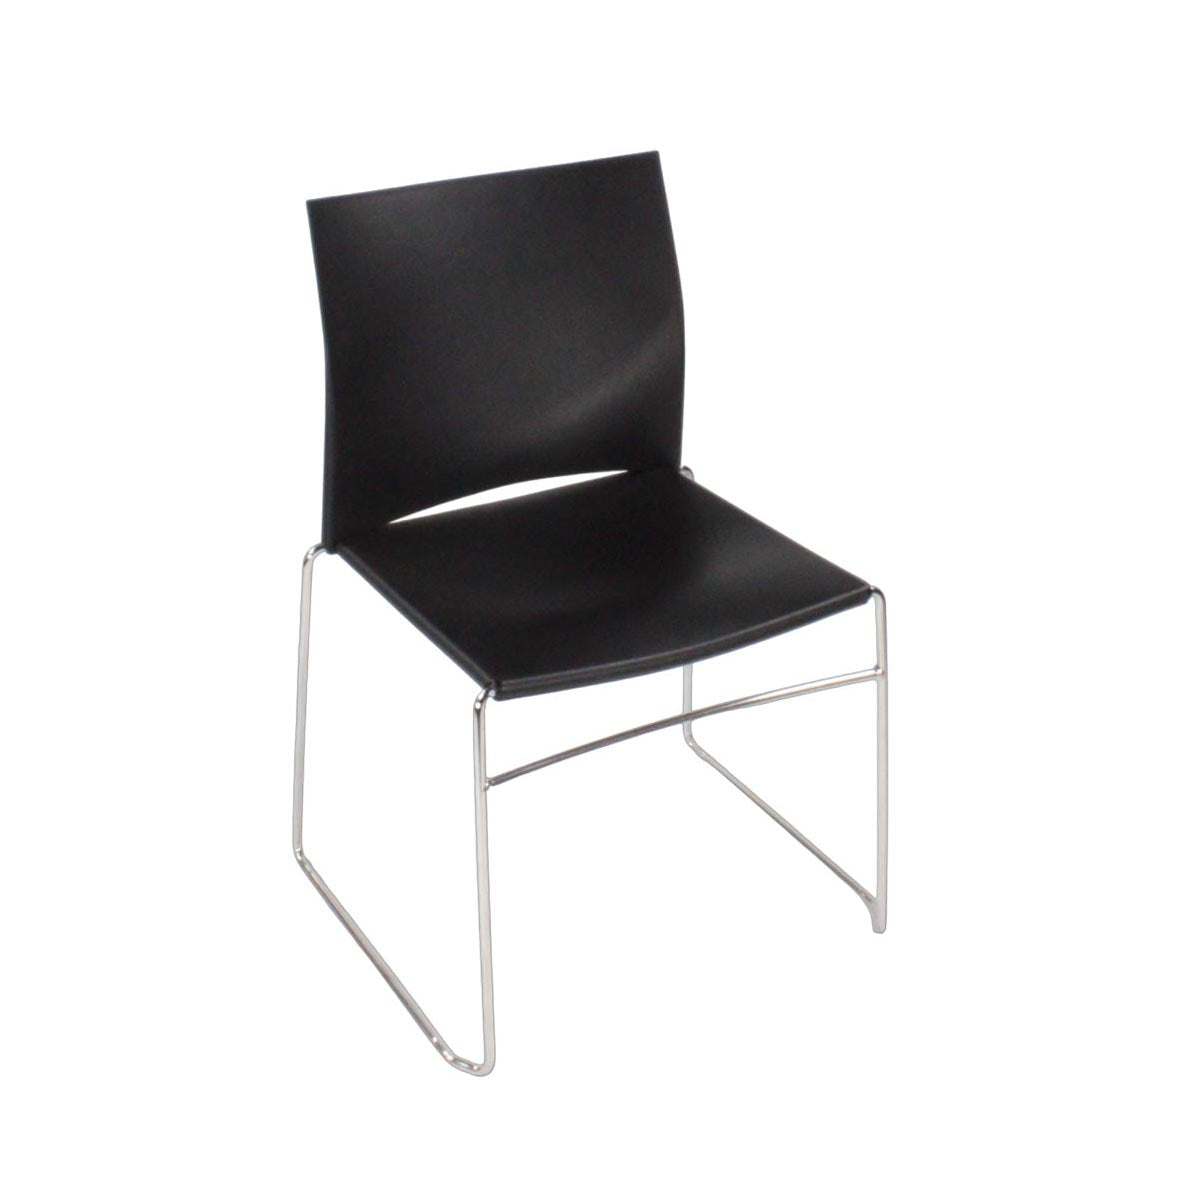 Herman Miller: Pronta stapelstoel in zwart - gerenoveerd